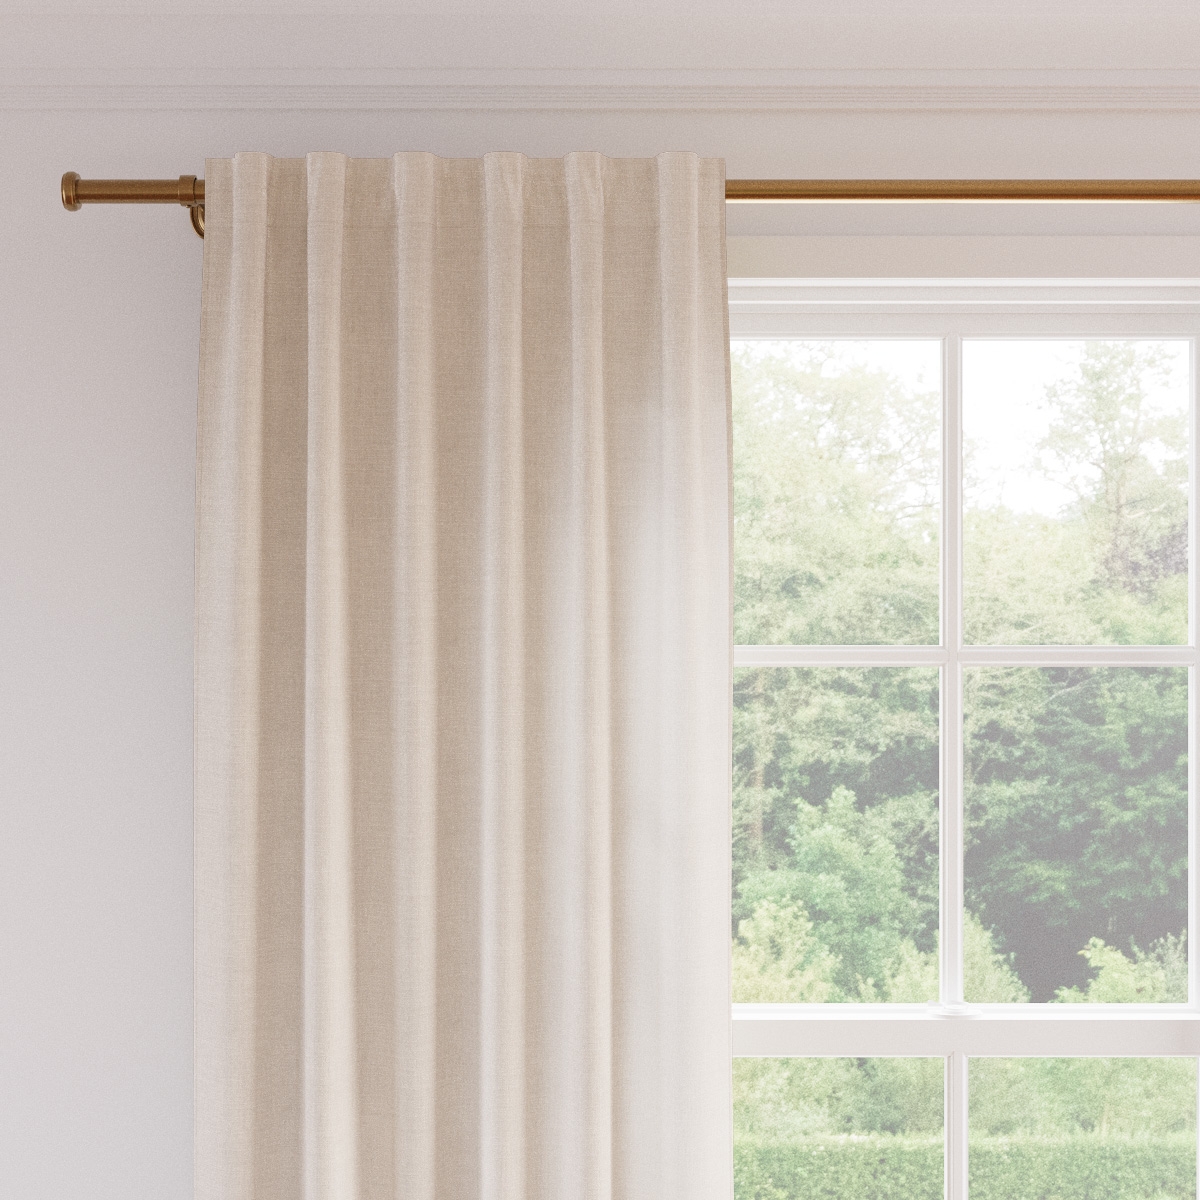 Linen Curtain, Antique White Linen, 50" x 108", Unlined - Image 1